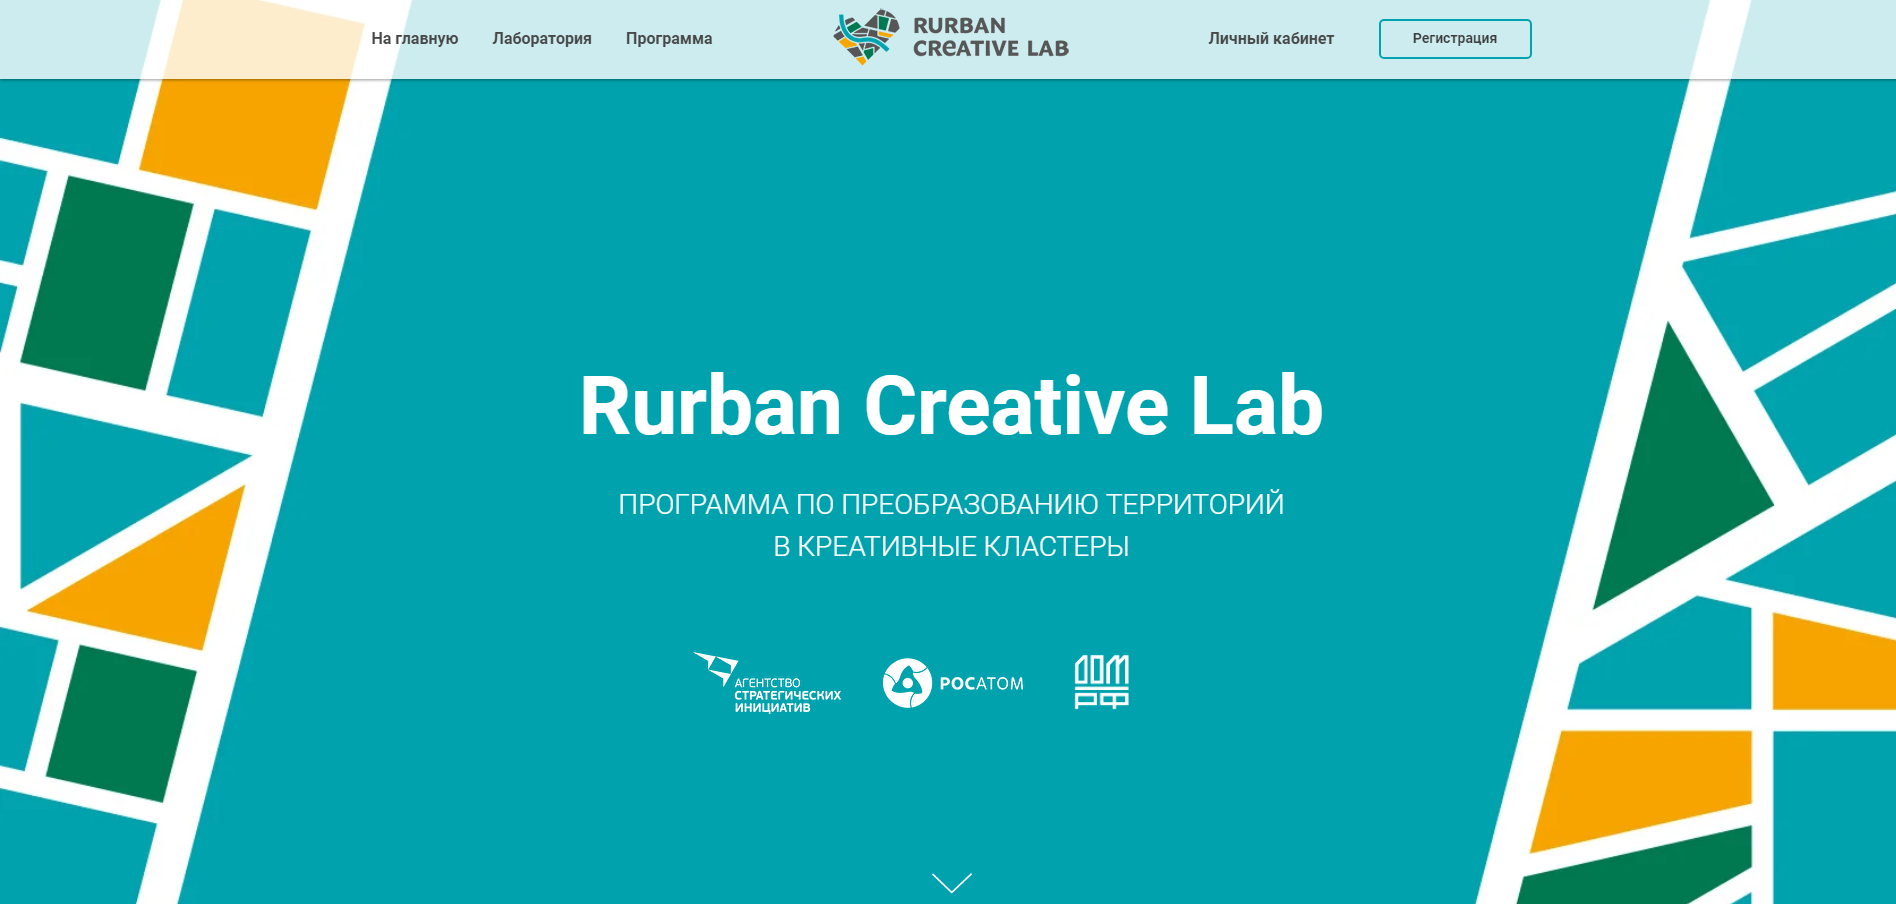 Rurban Creative Lab - программа по преобразованию территорий в креативные кластеры